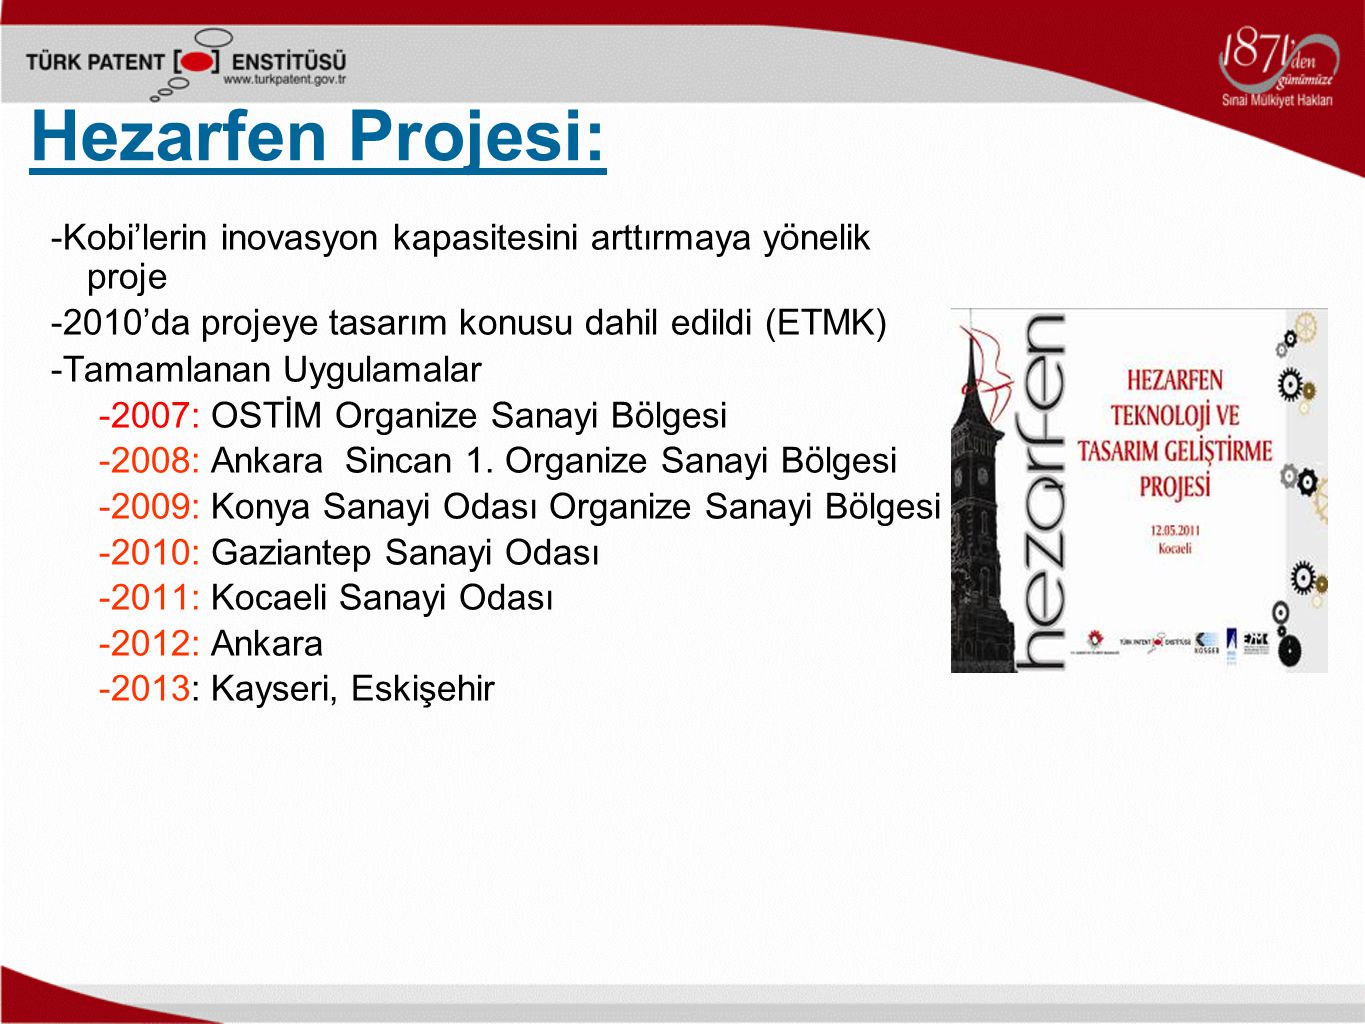 Hezarfen Projesi: -Kobi’lerin inovasyon kapasitesini arttırmaya yönelik proje -2010’da projeye tasarım konusu dahil edildi (ETMK) -Tamamlanan Uygulamalar -2007: OSTİM Organize Sanayi Bölgesi -2008: Ankara Sincan 1.